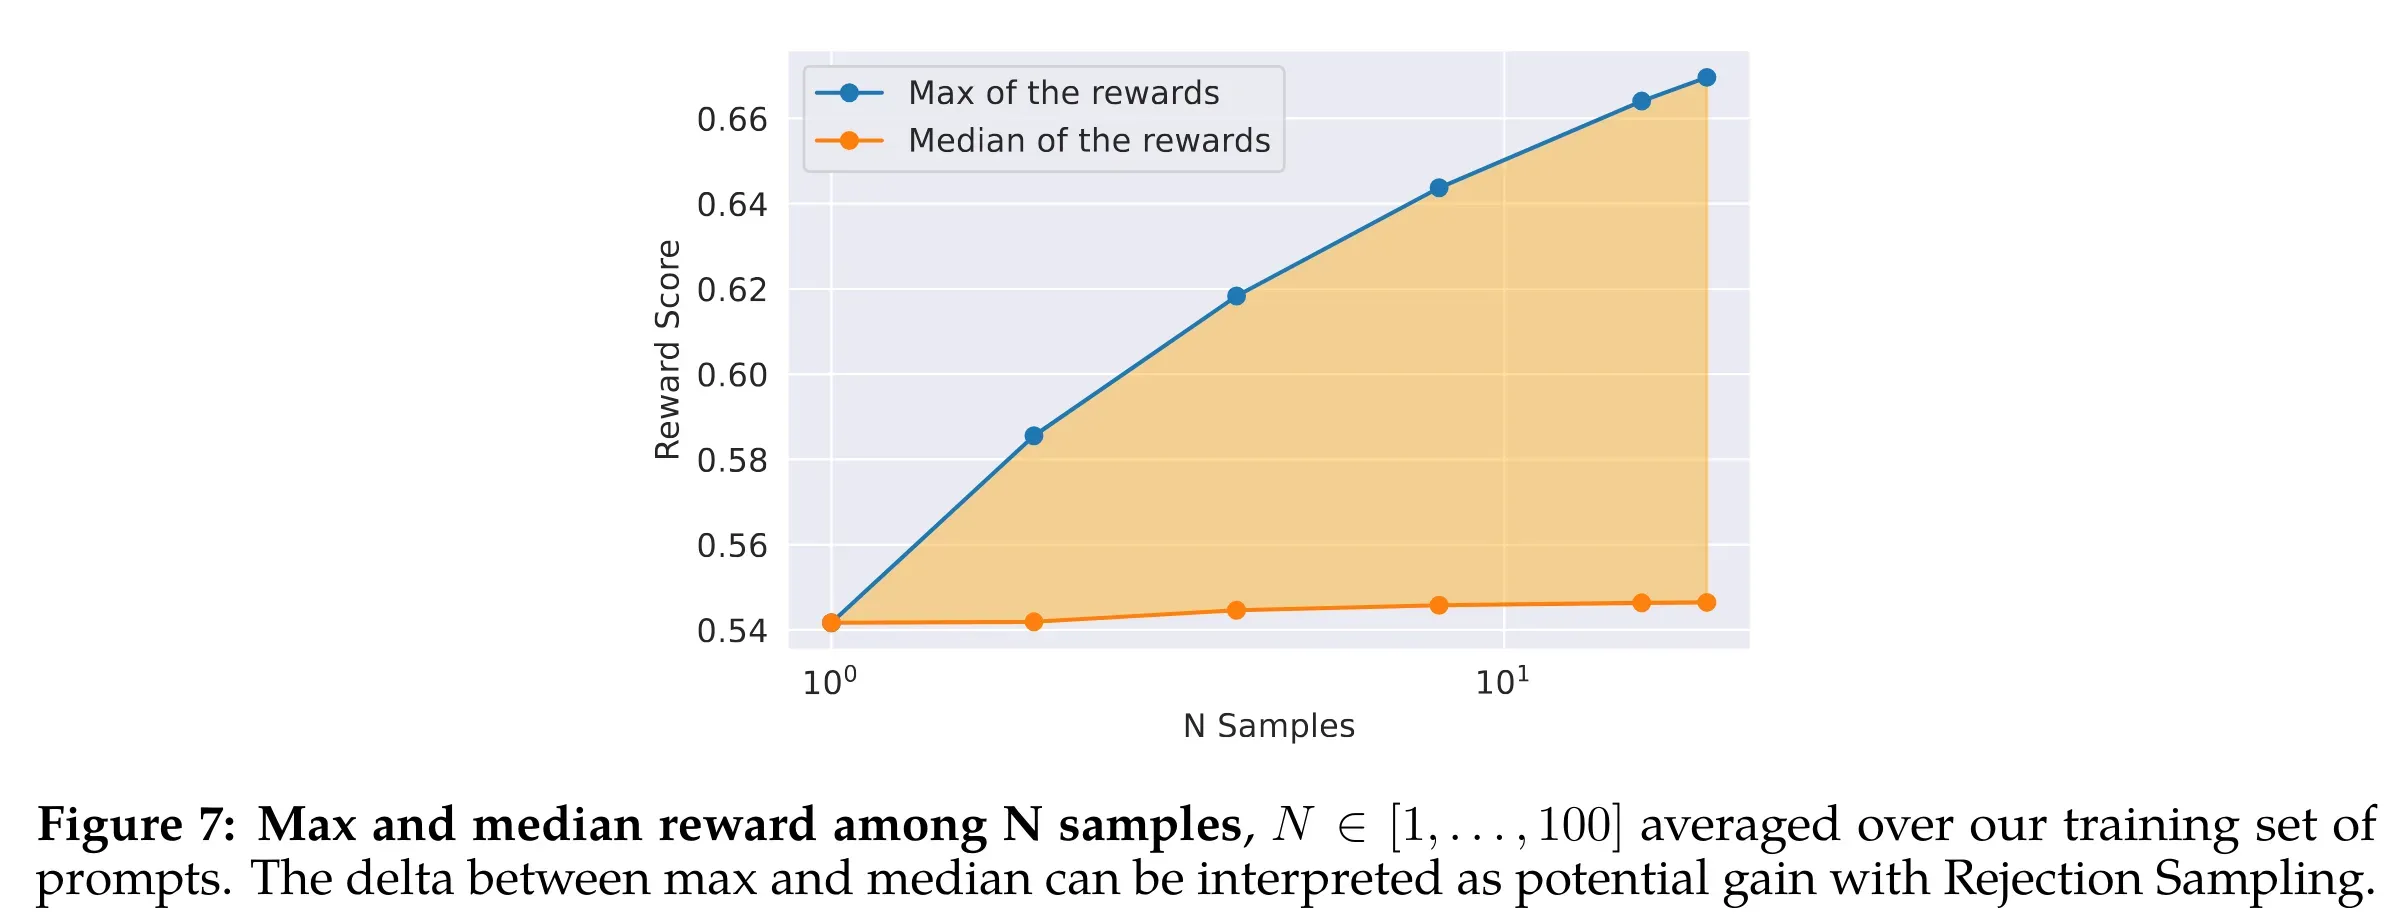 Max and median reward among N samples